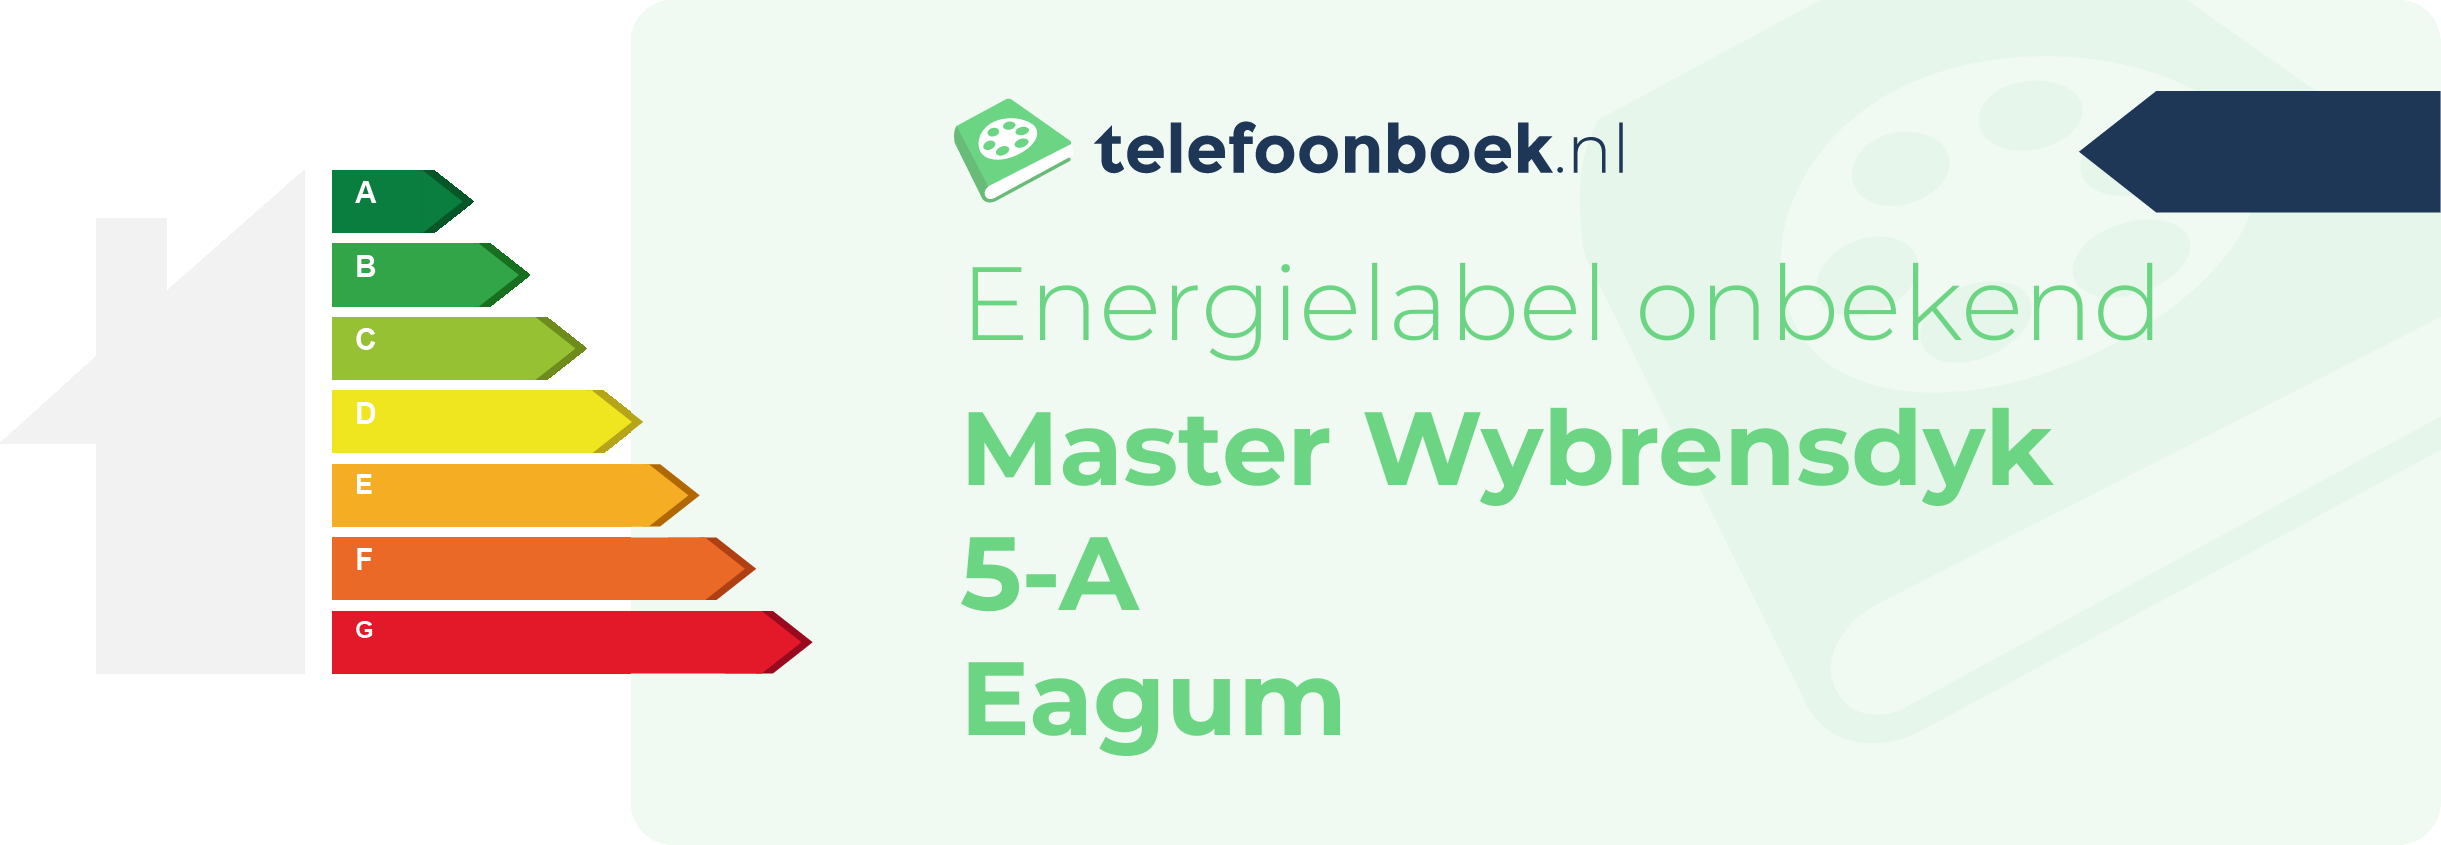 Energielabel Master Wybrensdyk 5-A Eagum